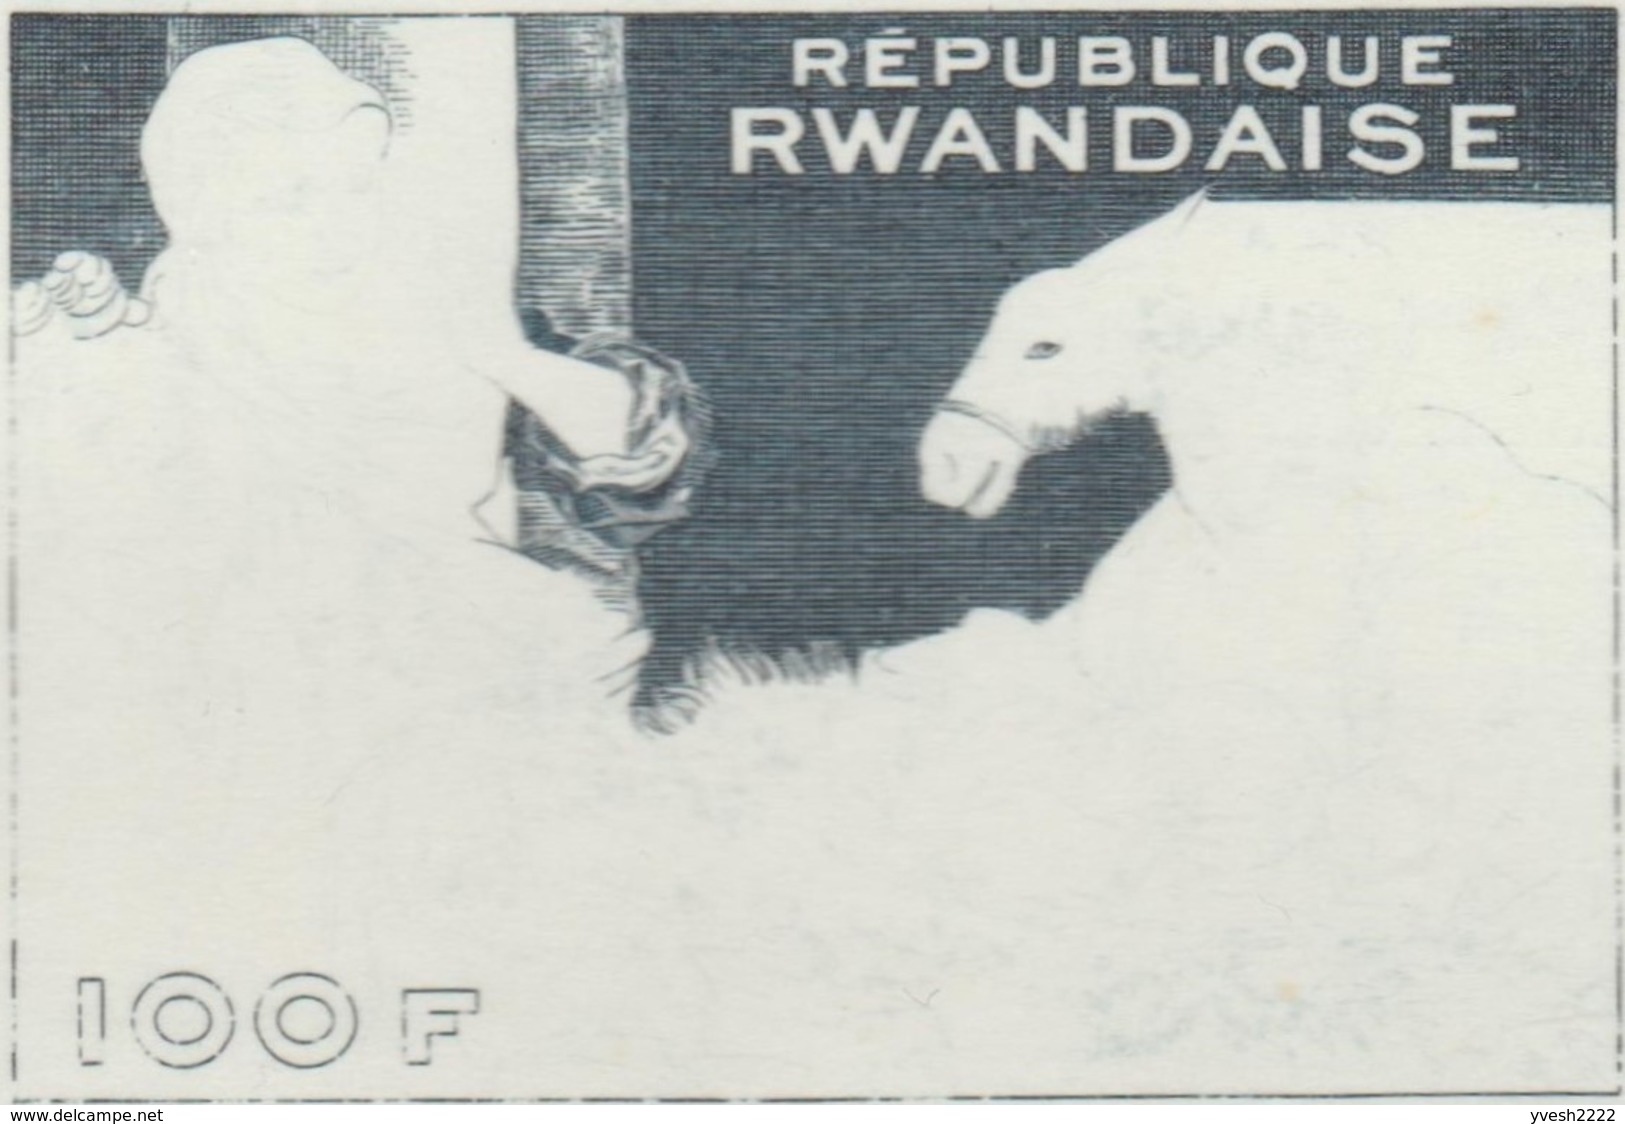 Rwanda 1969 COB BF 20. 11 épreuves D'état Et D'artiste. Noël, Peinture, Le Corrège, Correggio âne, Renaissance Italienne - Burros Y Asnos